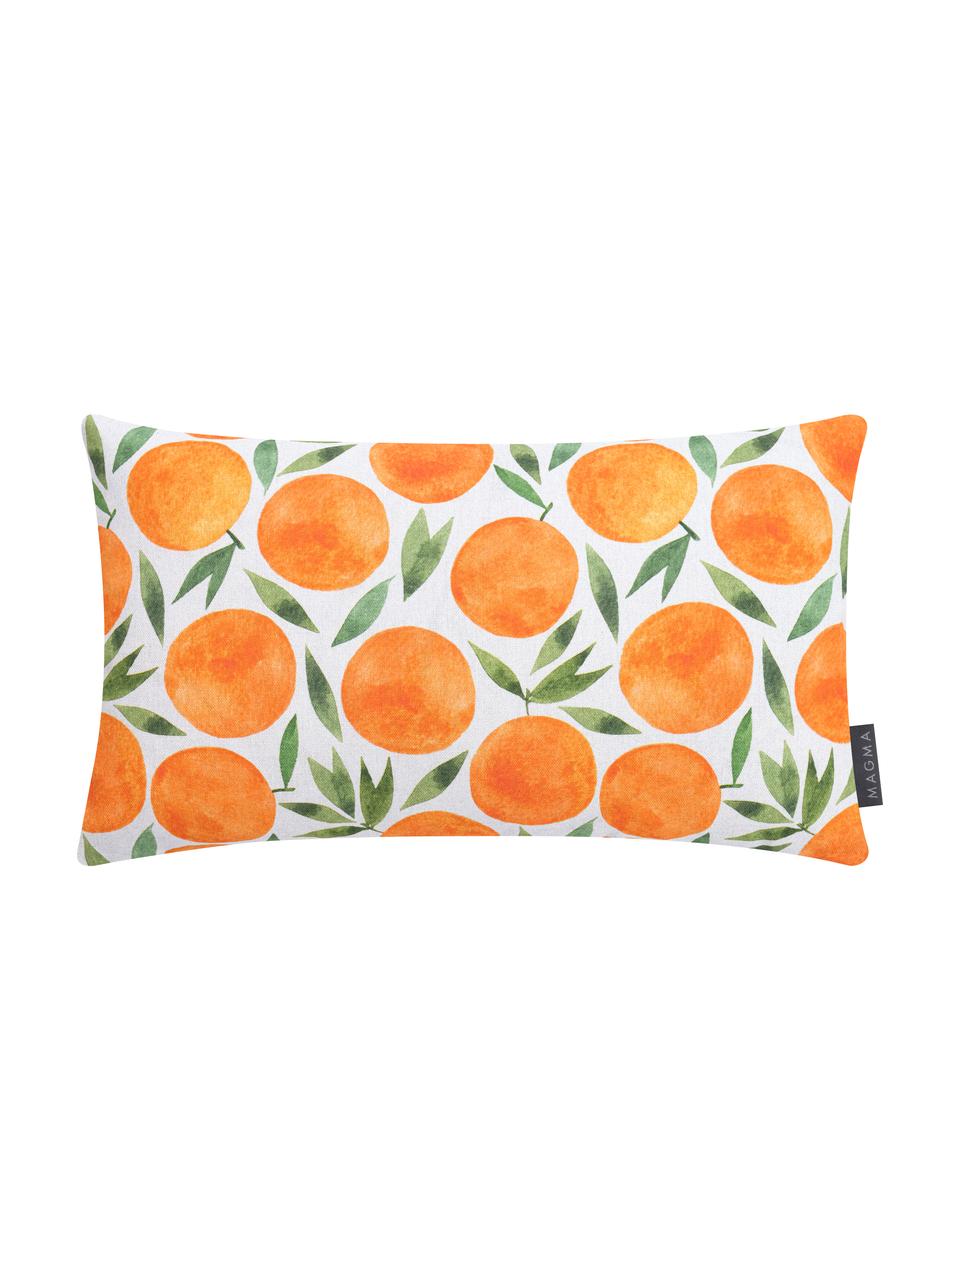 Kissenhülle Orange mit sommerlichem Motiv, Webart: Halbpanama, Orange, Weiss, Grün, 30 x 50 cm